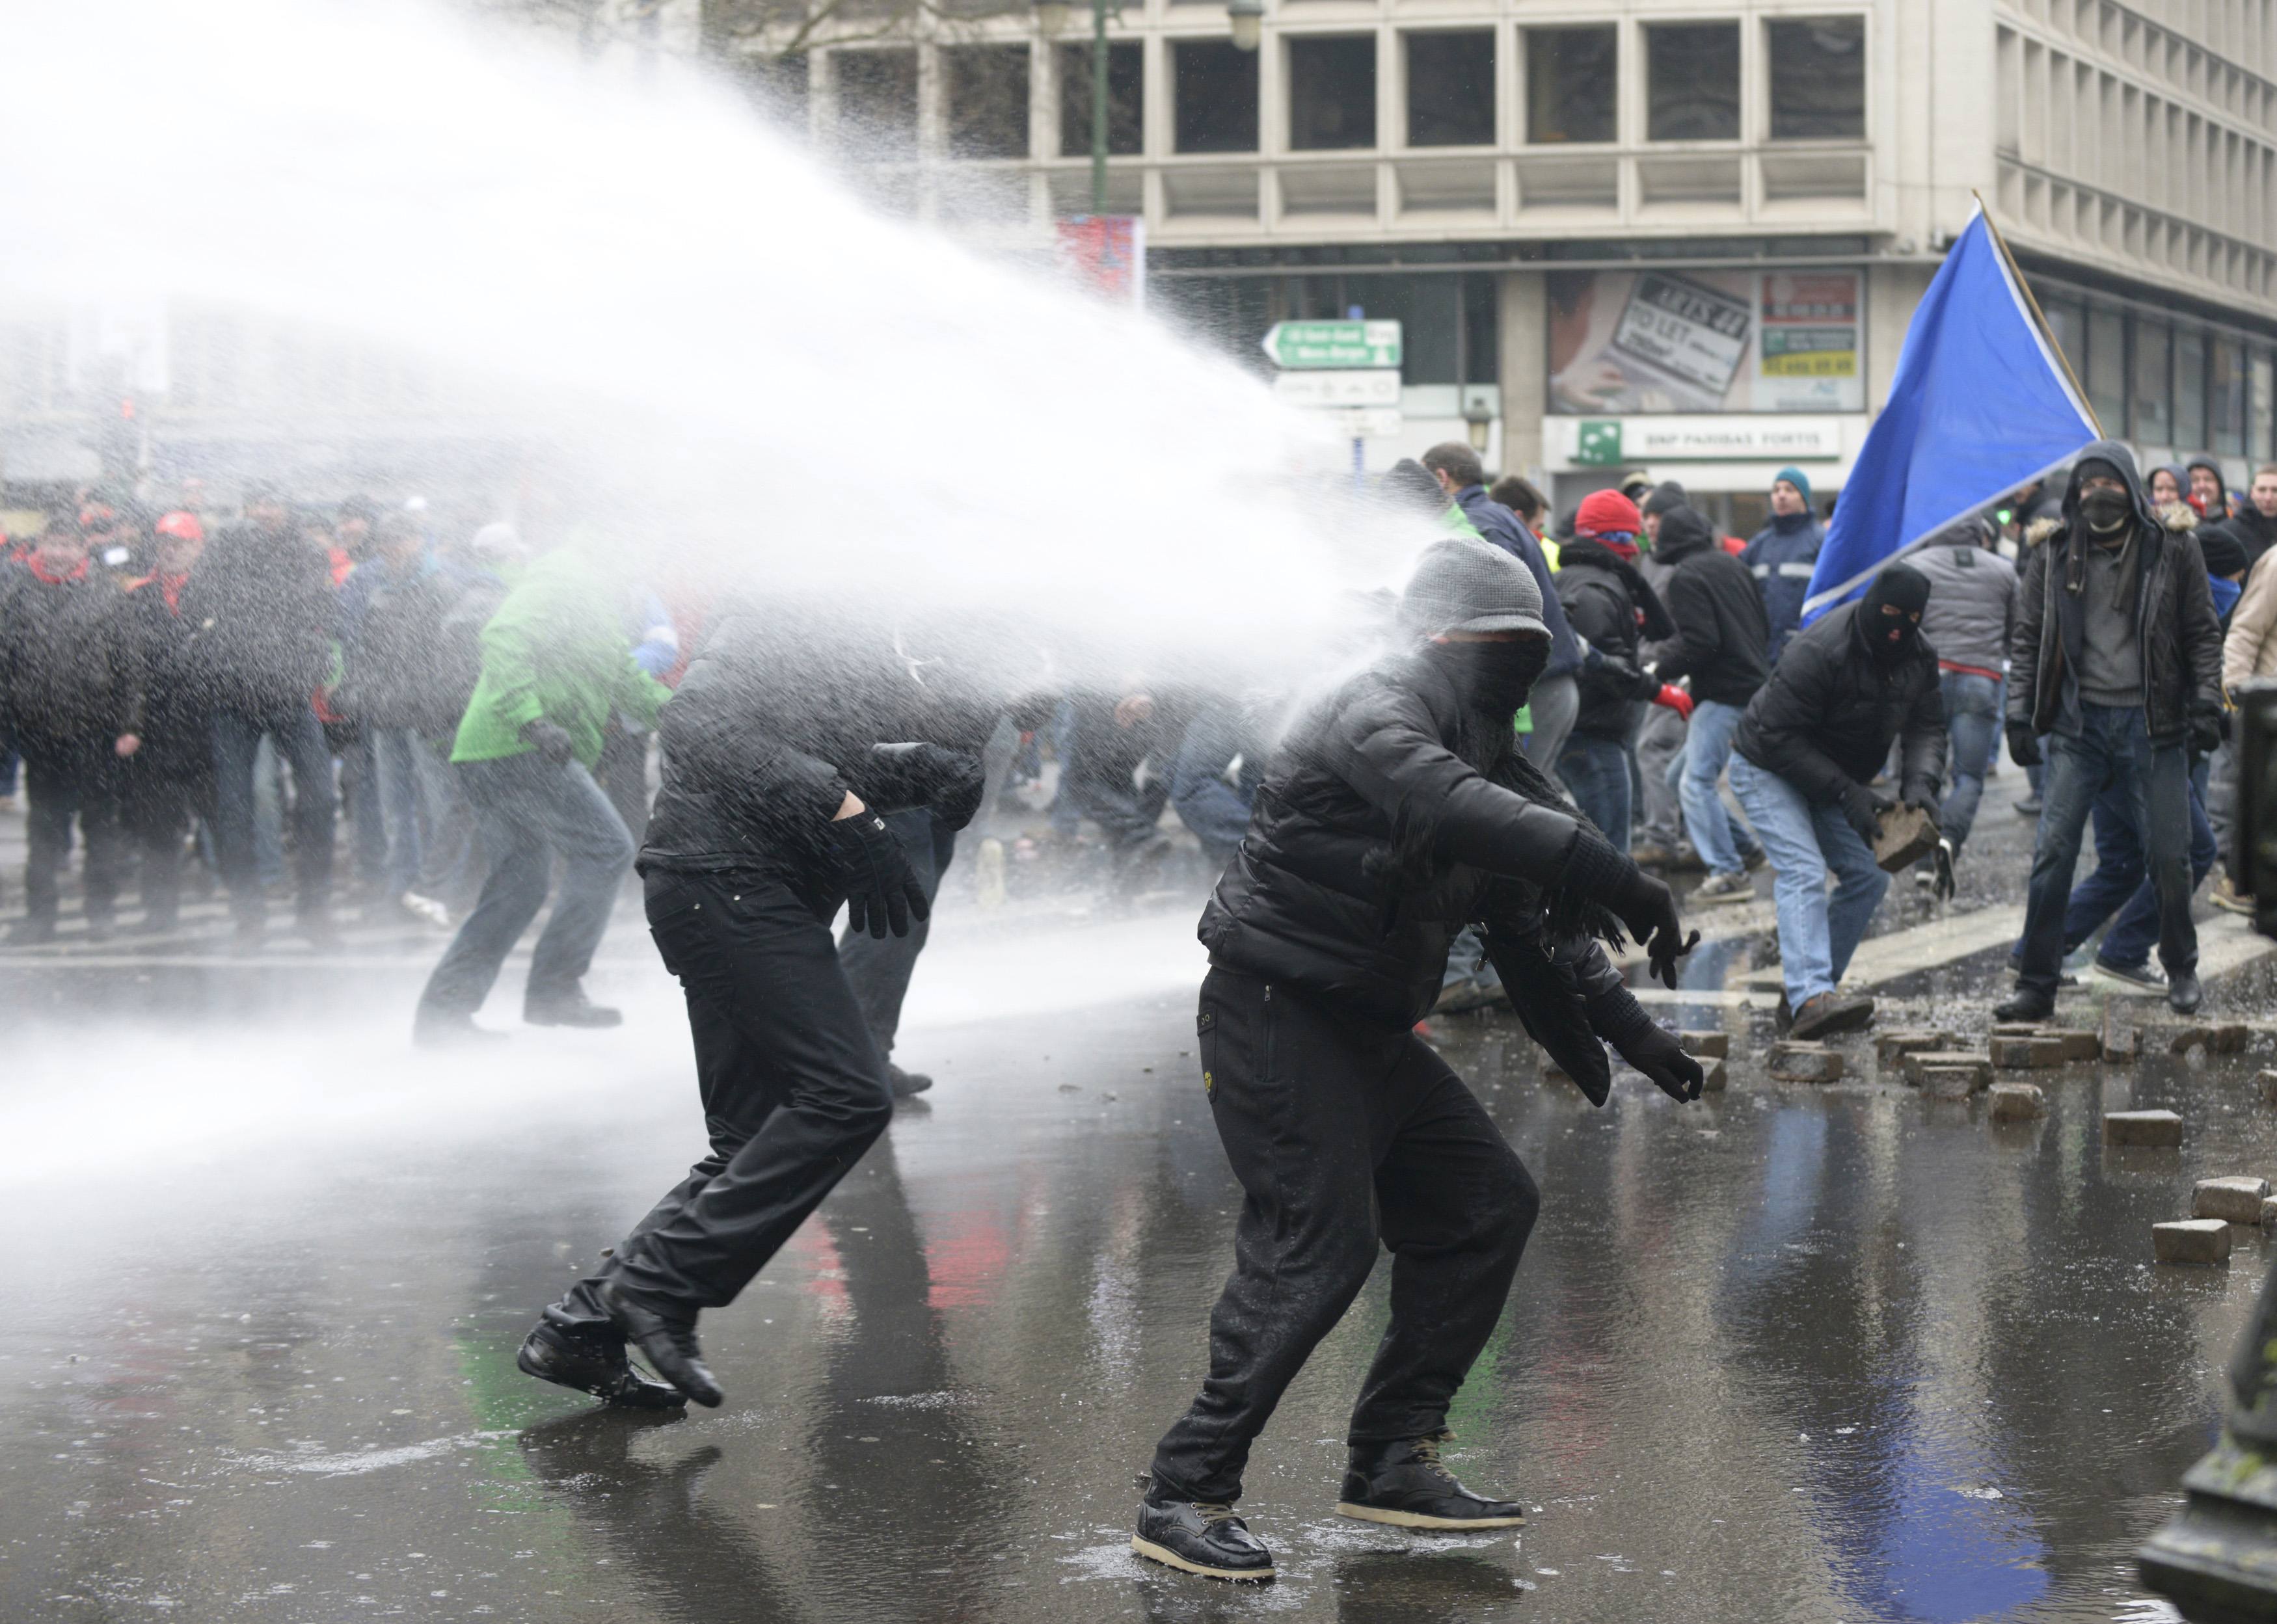 “Πόλεμος” μεταξύ αστυνομικών και διαδηλωτών στις Βρυξέλλες